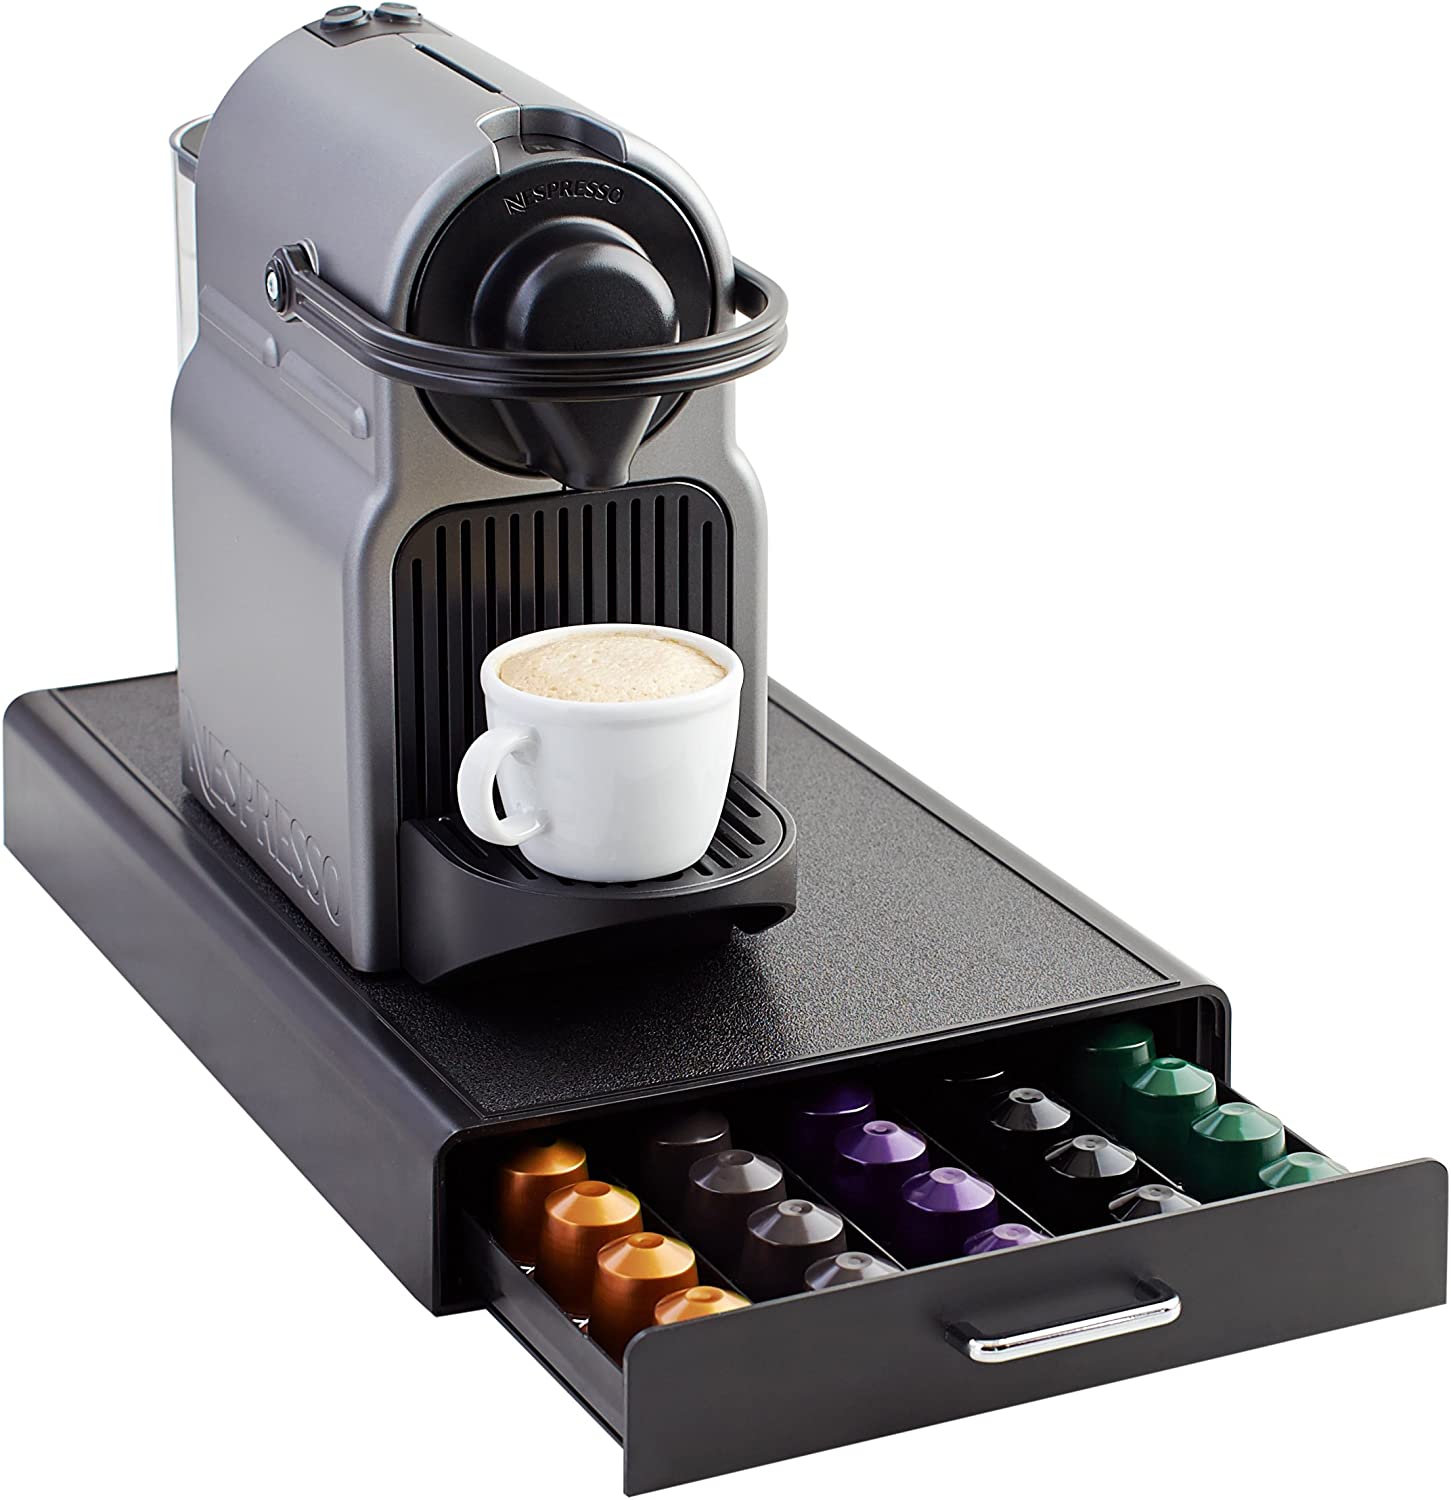 AmazonBasics Amazon Basics drawer box for storing Nespresso coffee capsules, capacity: 50 capsules